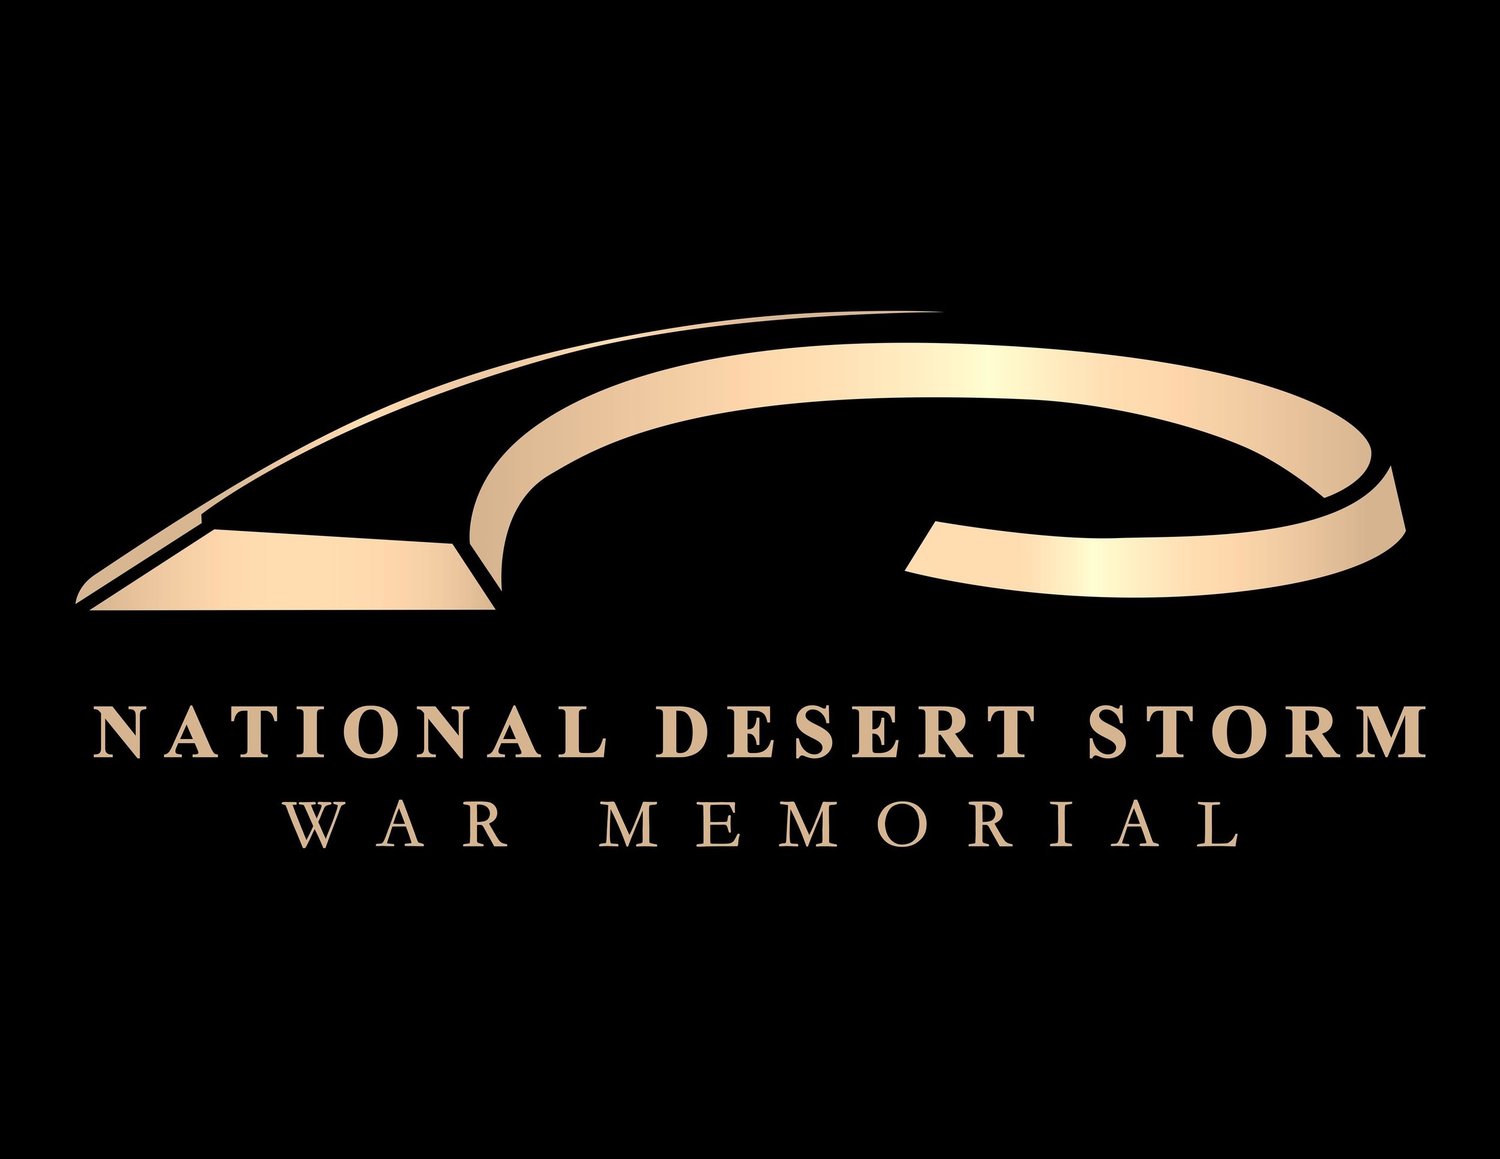 ‘National Desert Storm War Memorial’ Receives Donation From Team Run Fierce!